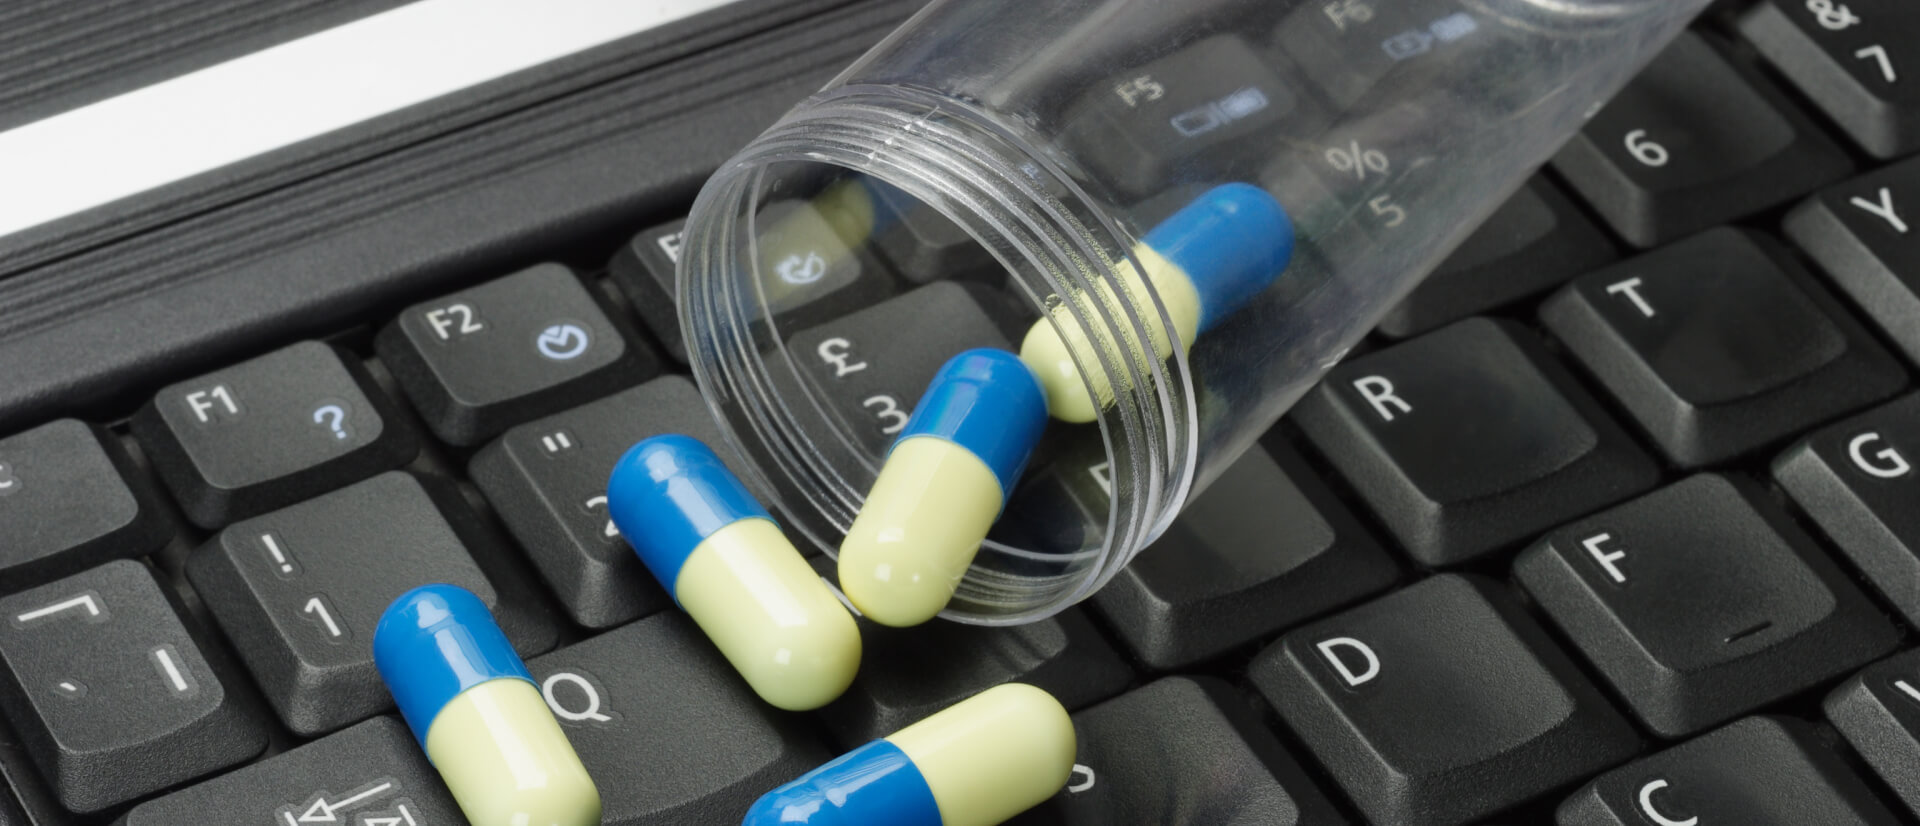 Tips for Choosing a Safe Online Pharmacy